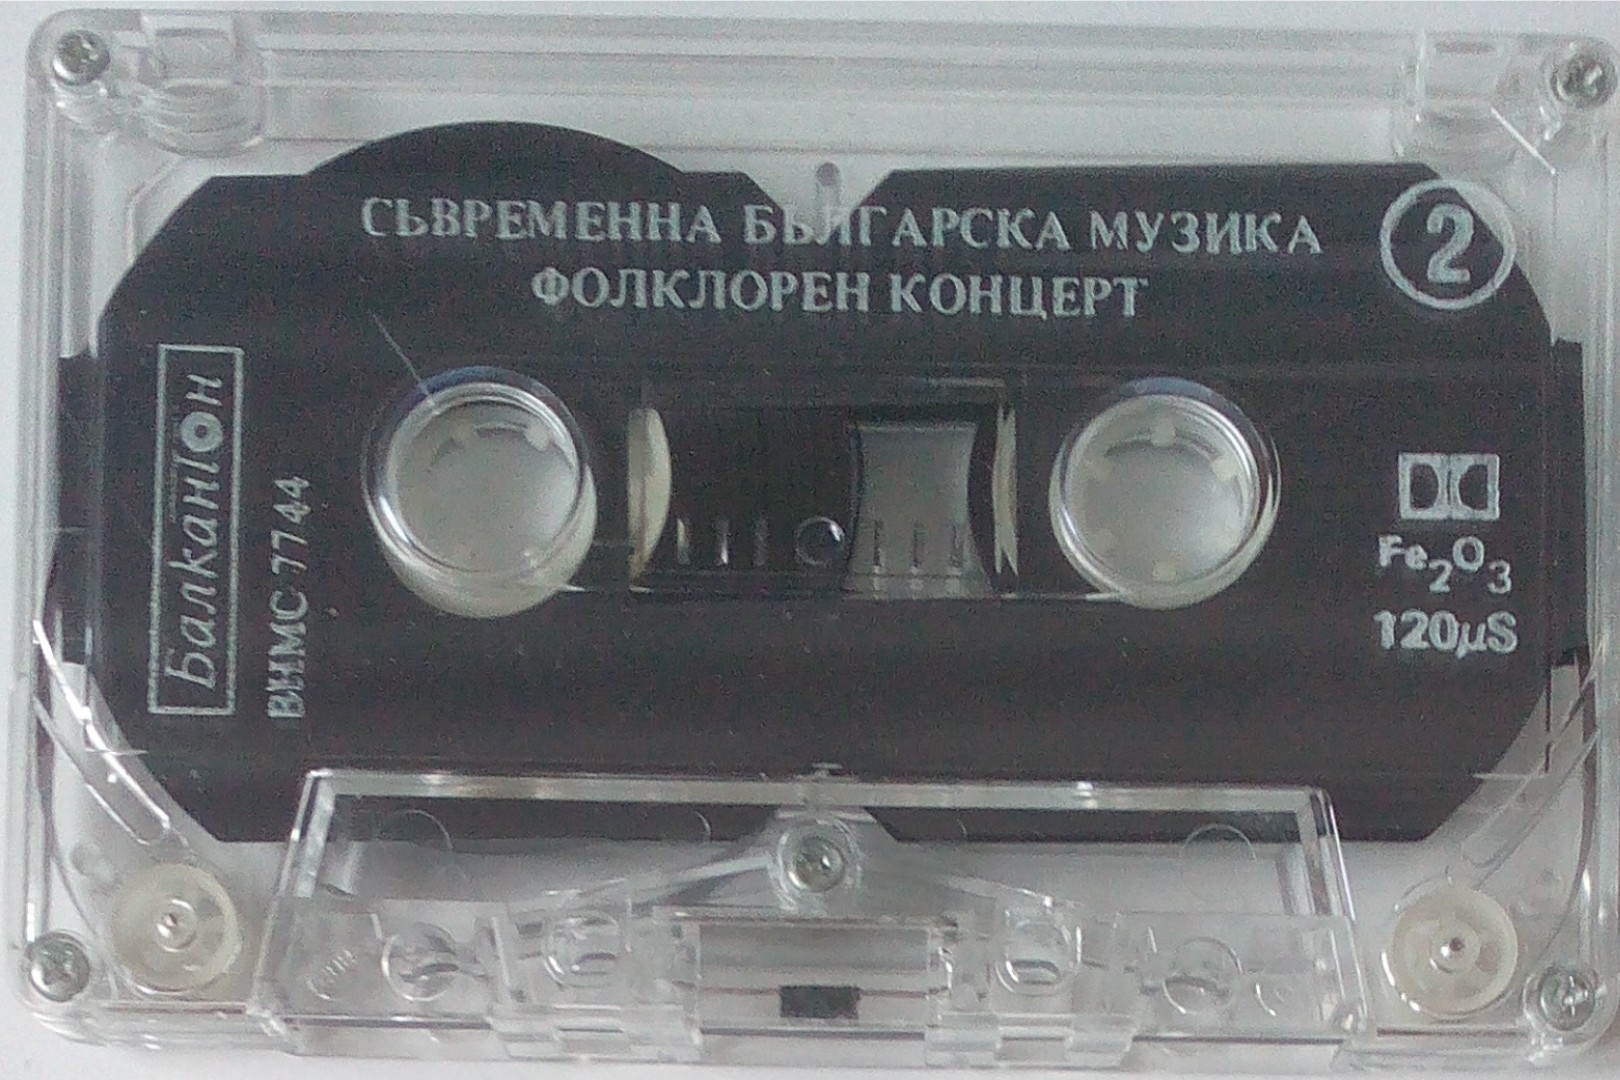 Съвременна българска музика. Български композитори (СБК)